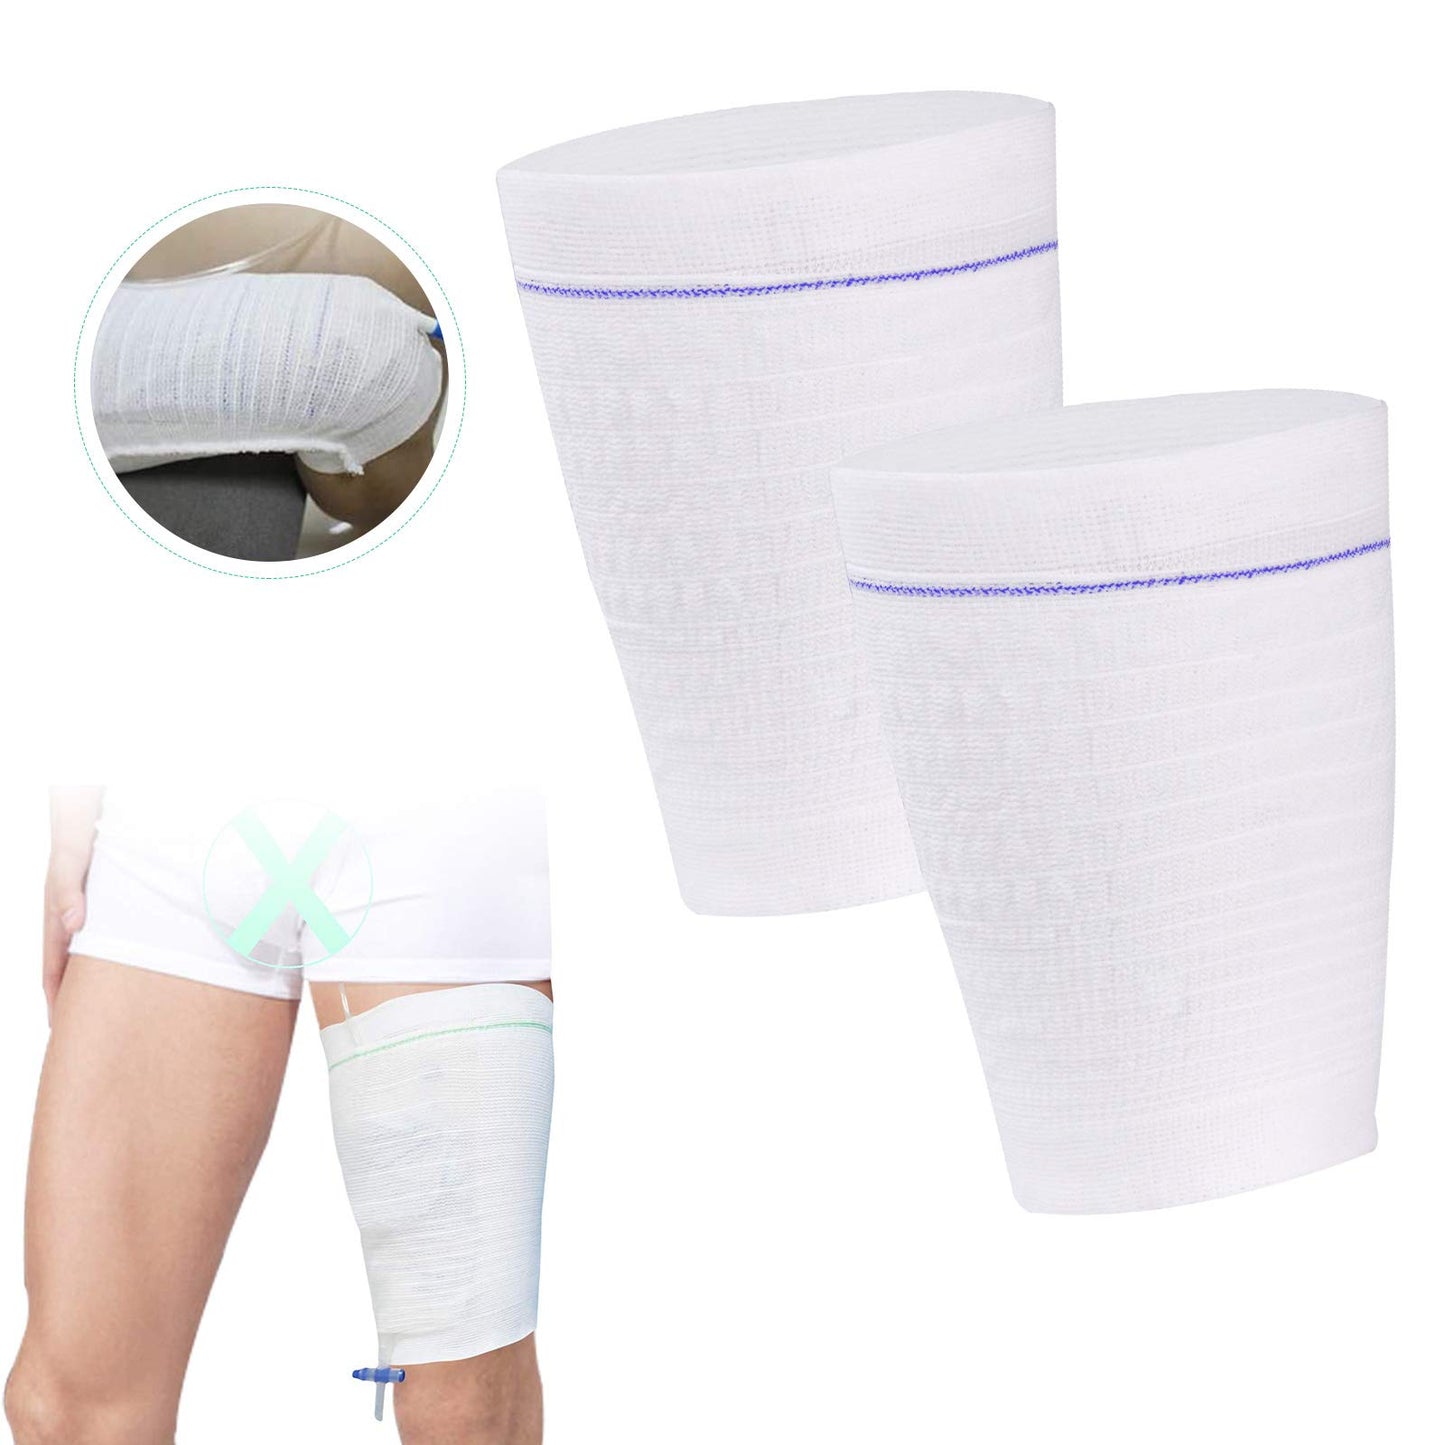 Urine Leg Bag Holder Fabric Catheter Bag Holder Stay in Place Catheter Sleeve Washable Foley Bag Catheter Holder for Men or Women Wheelchairs, 3 Packs, X-Small